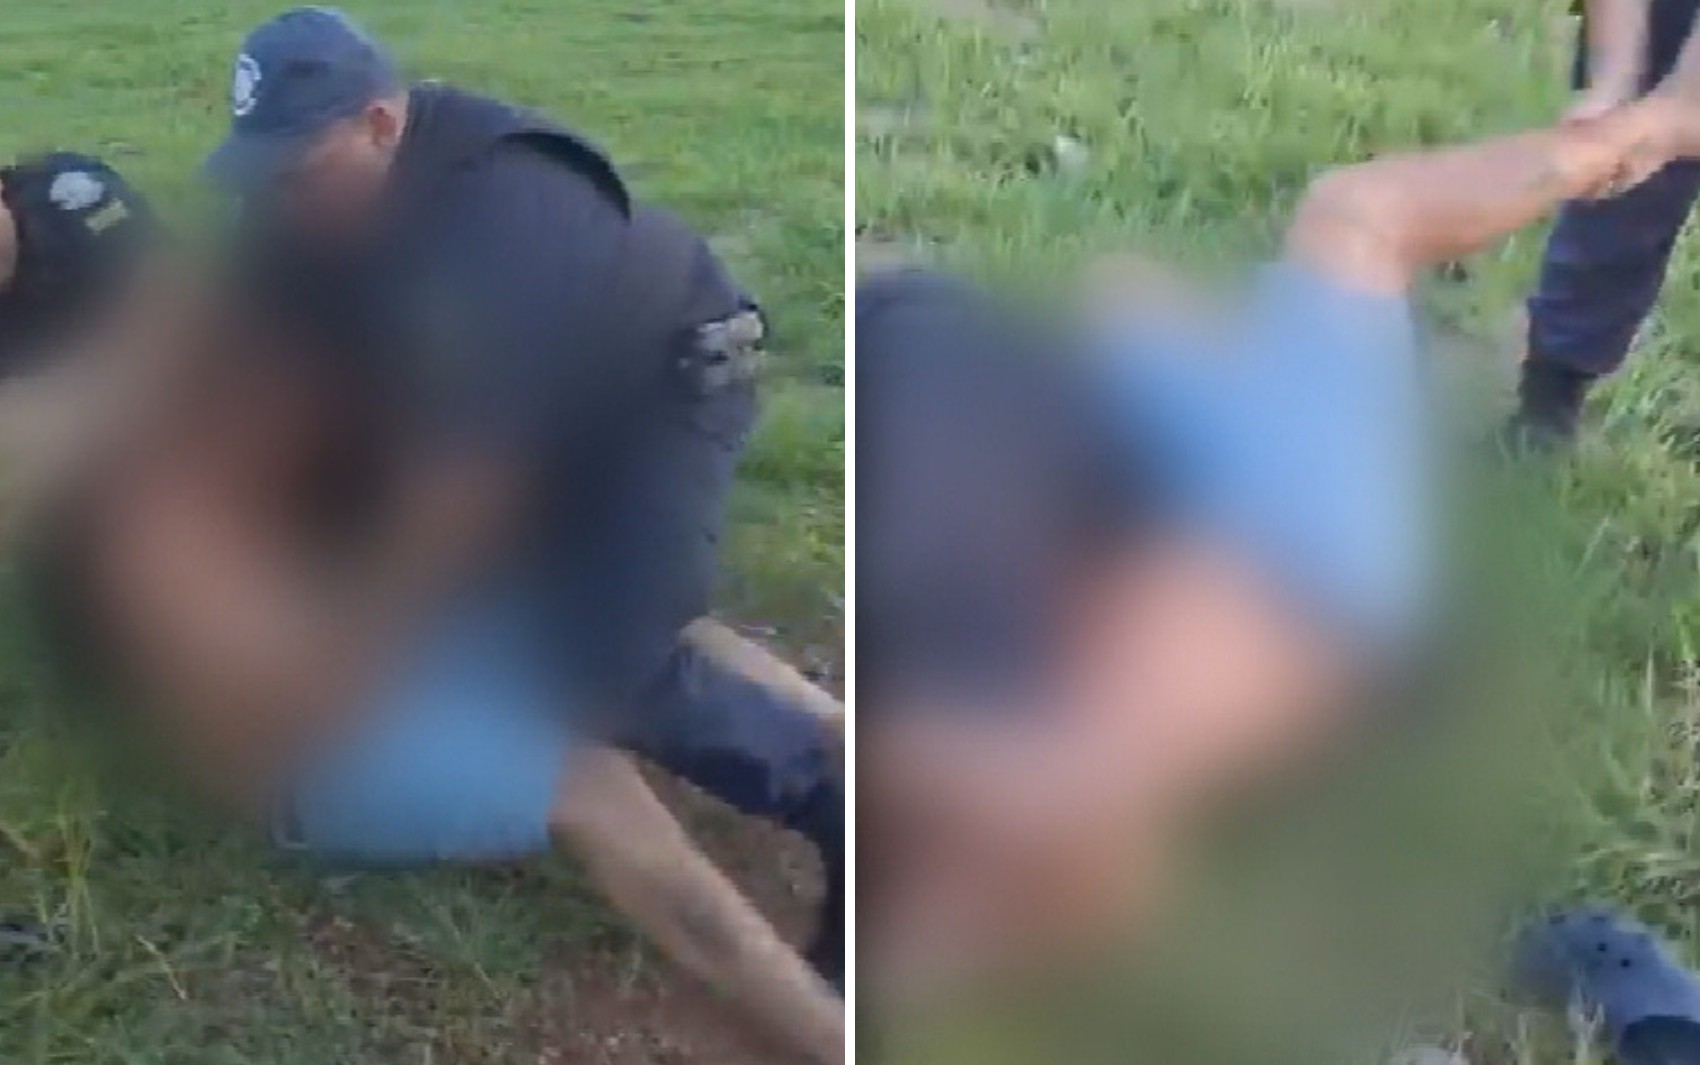 Guardas arrastam homem pelo pé e o seguram pelo pescoço durante abordagem em Goiás; vídeo